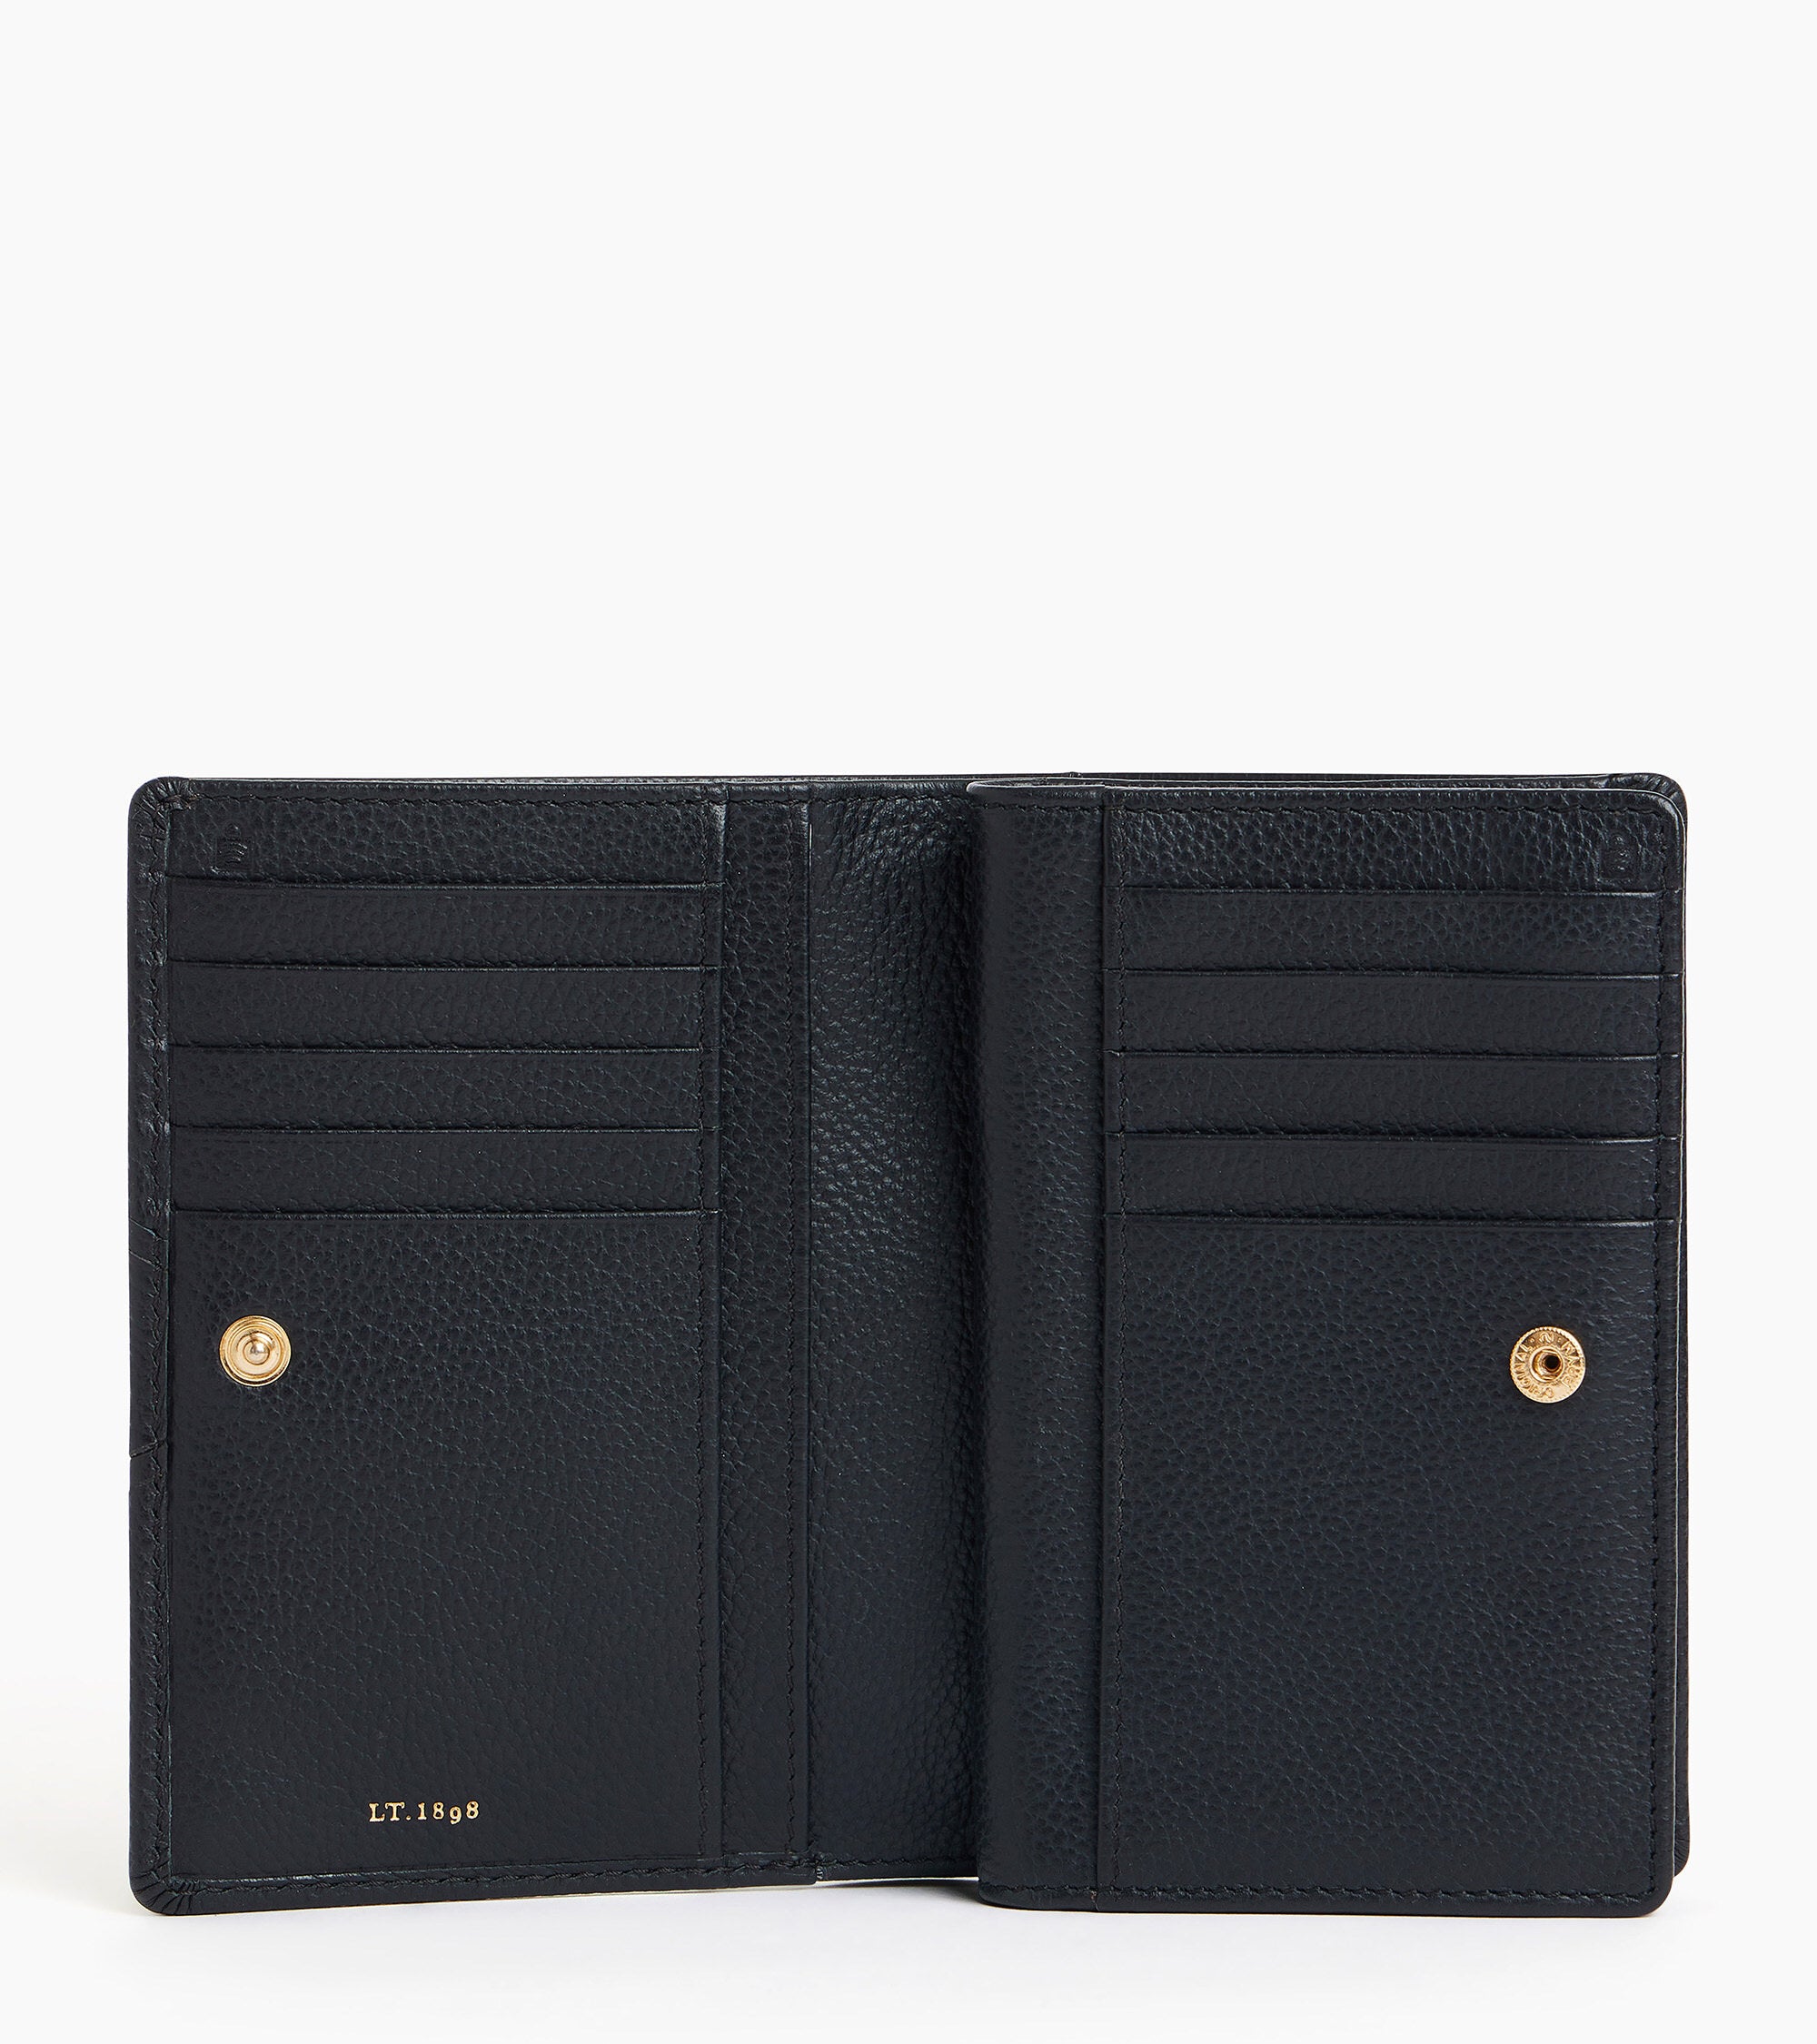 Ella medium grained leather wallet